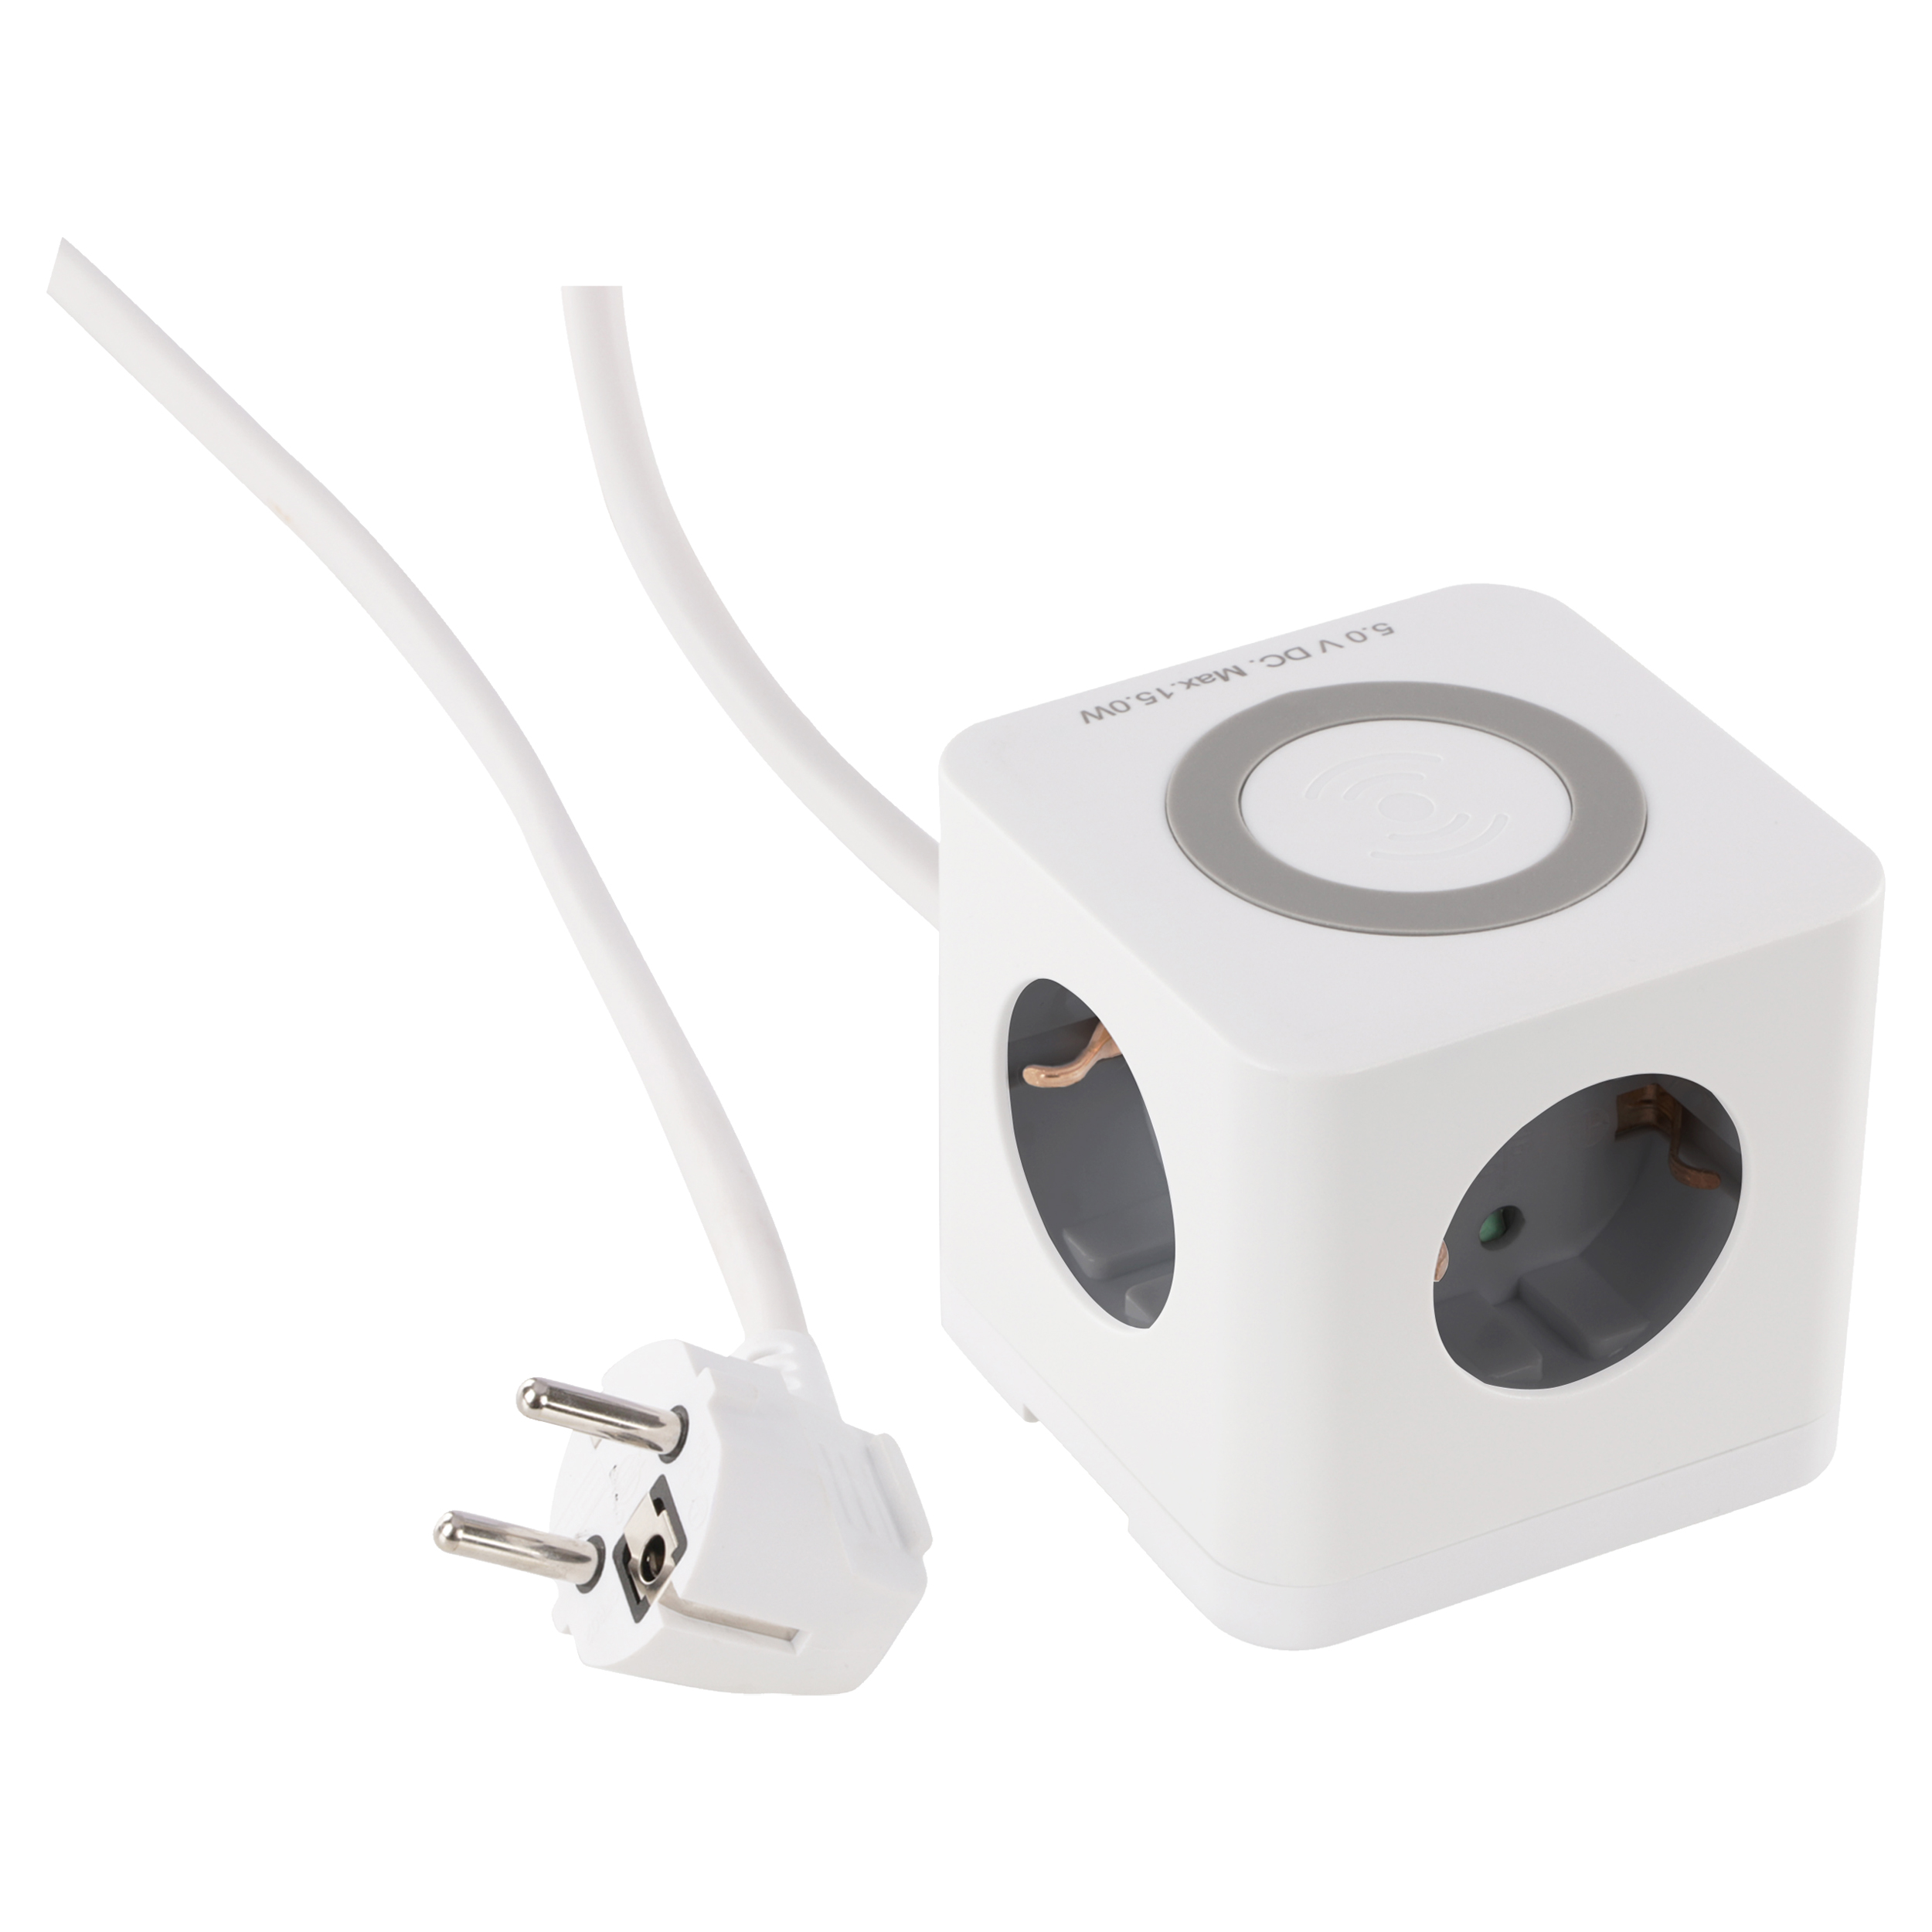 Stekkerdoos - cube - 3-voudig - randaarde - USB A/C - wireless charging